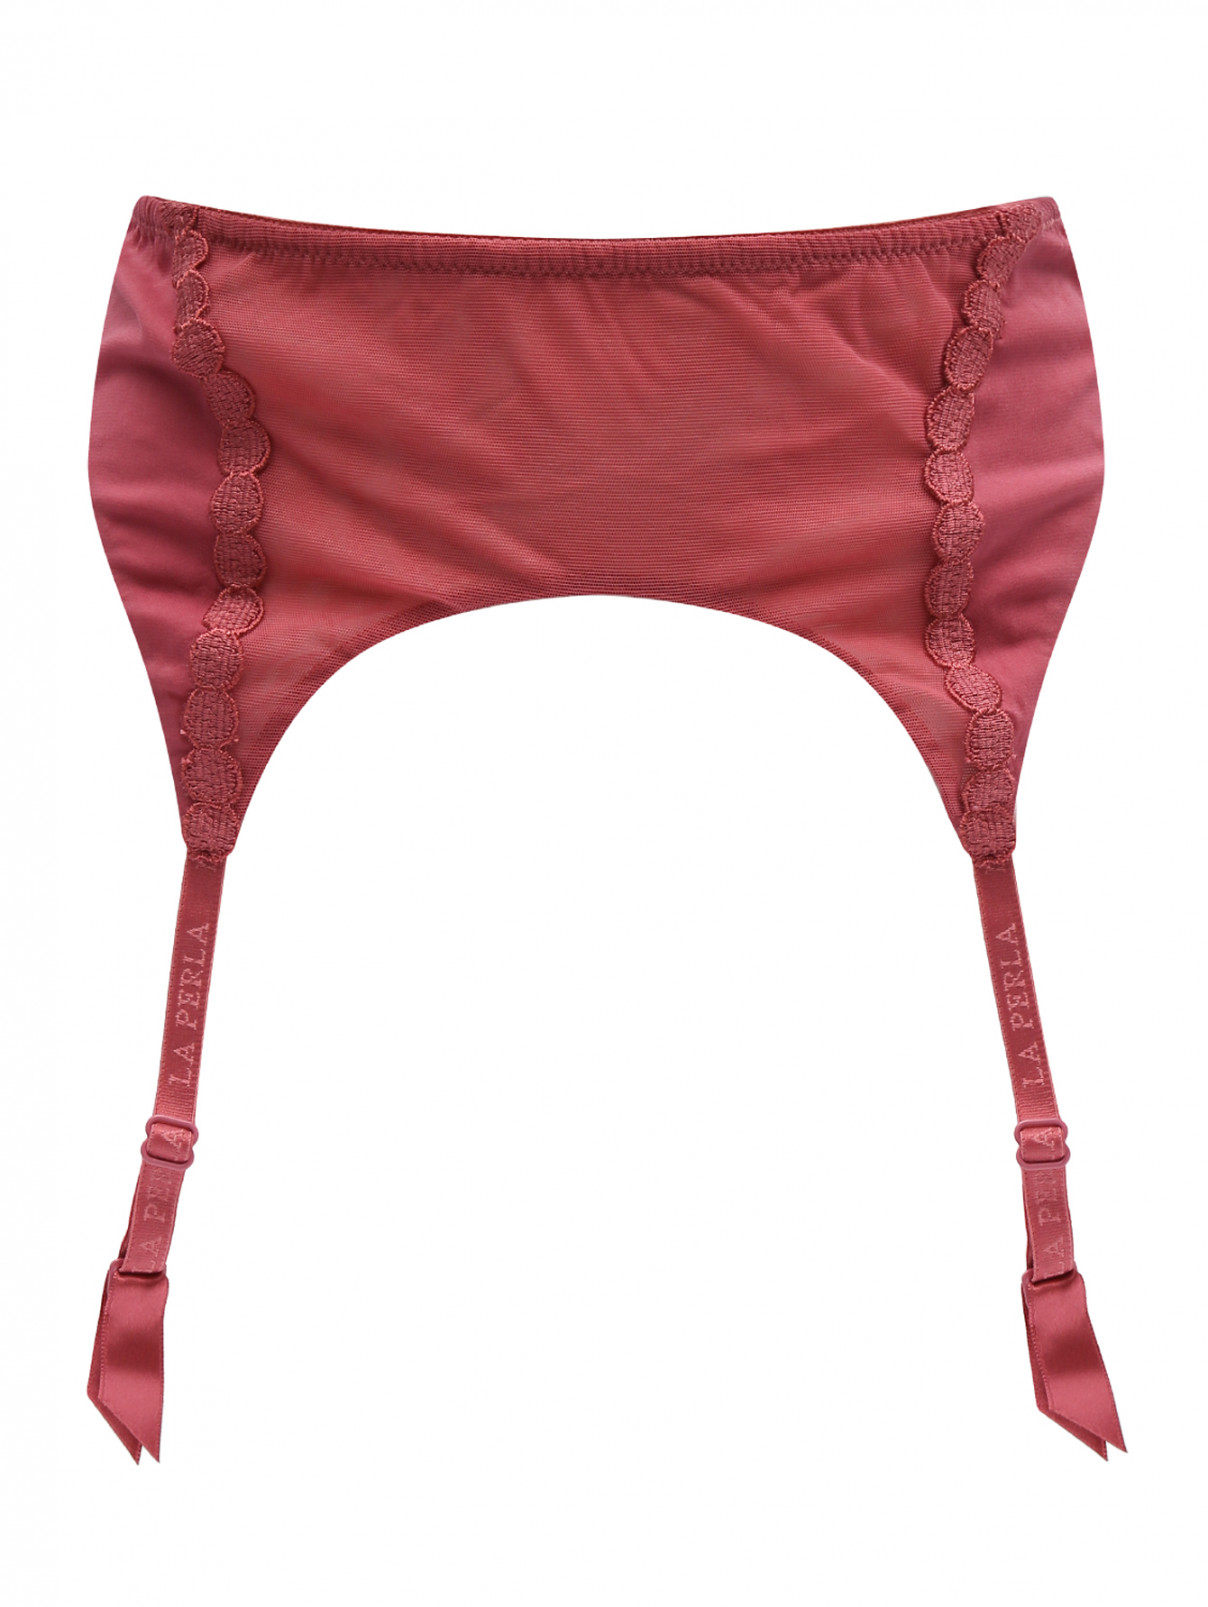 Пояс из шелка декорированный вышивкой La Perla  –  Общий вид  – Цвет:  Розовый